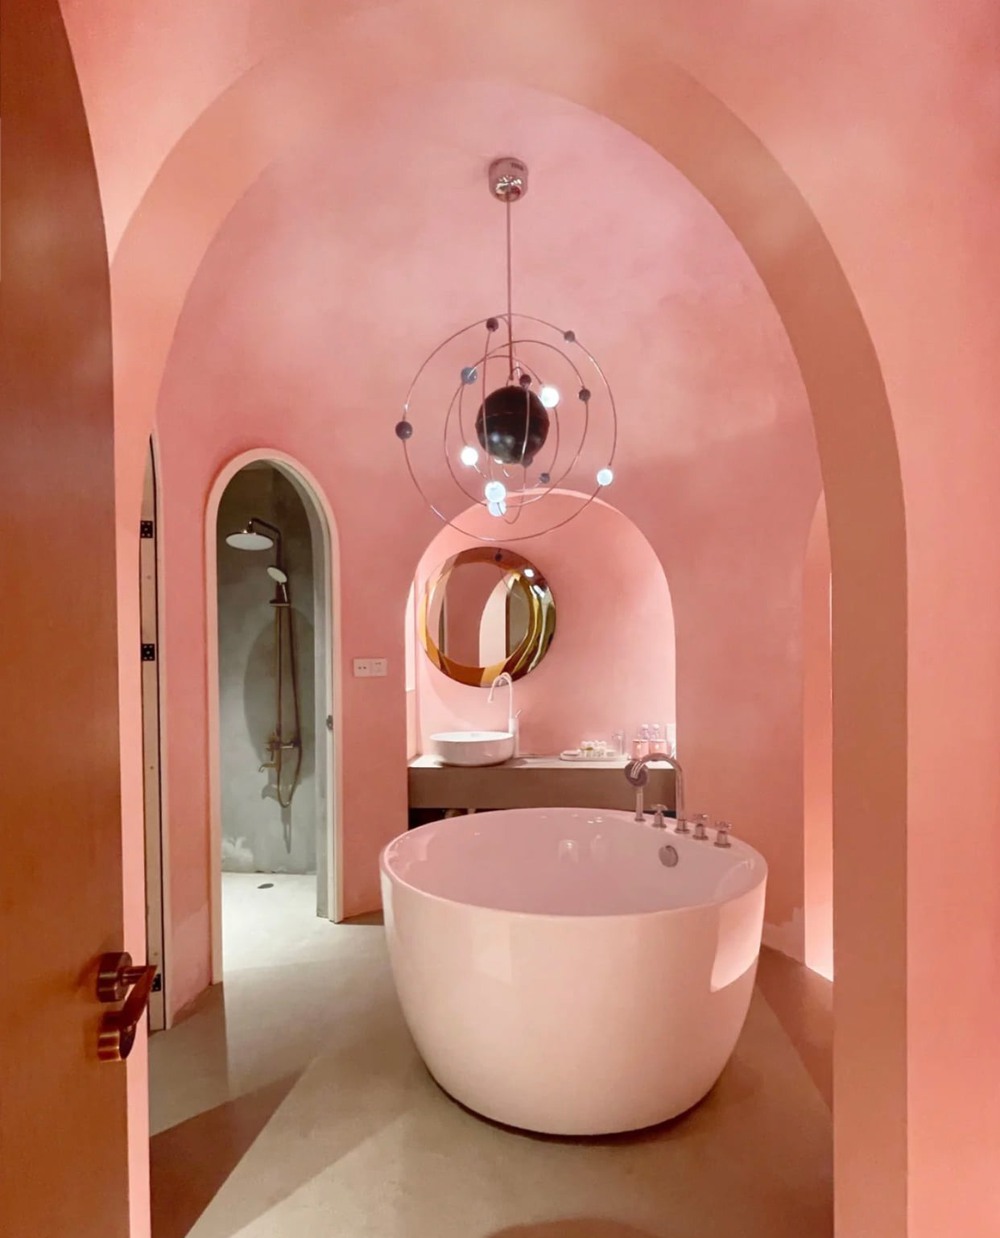 Khách sạn Địa Trung Hải ngập tràn màu hồng, nghe đến giá dân mê du lịch chỉ muốn đi ngay - Ảnh 6.